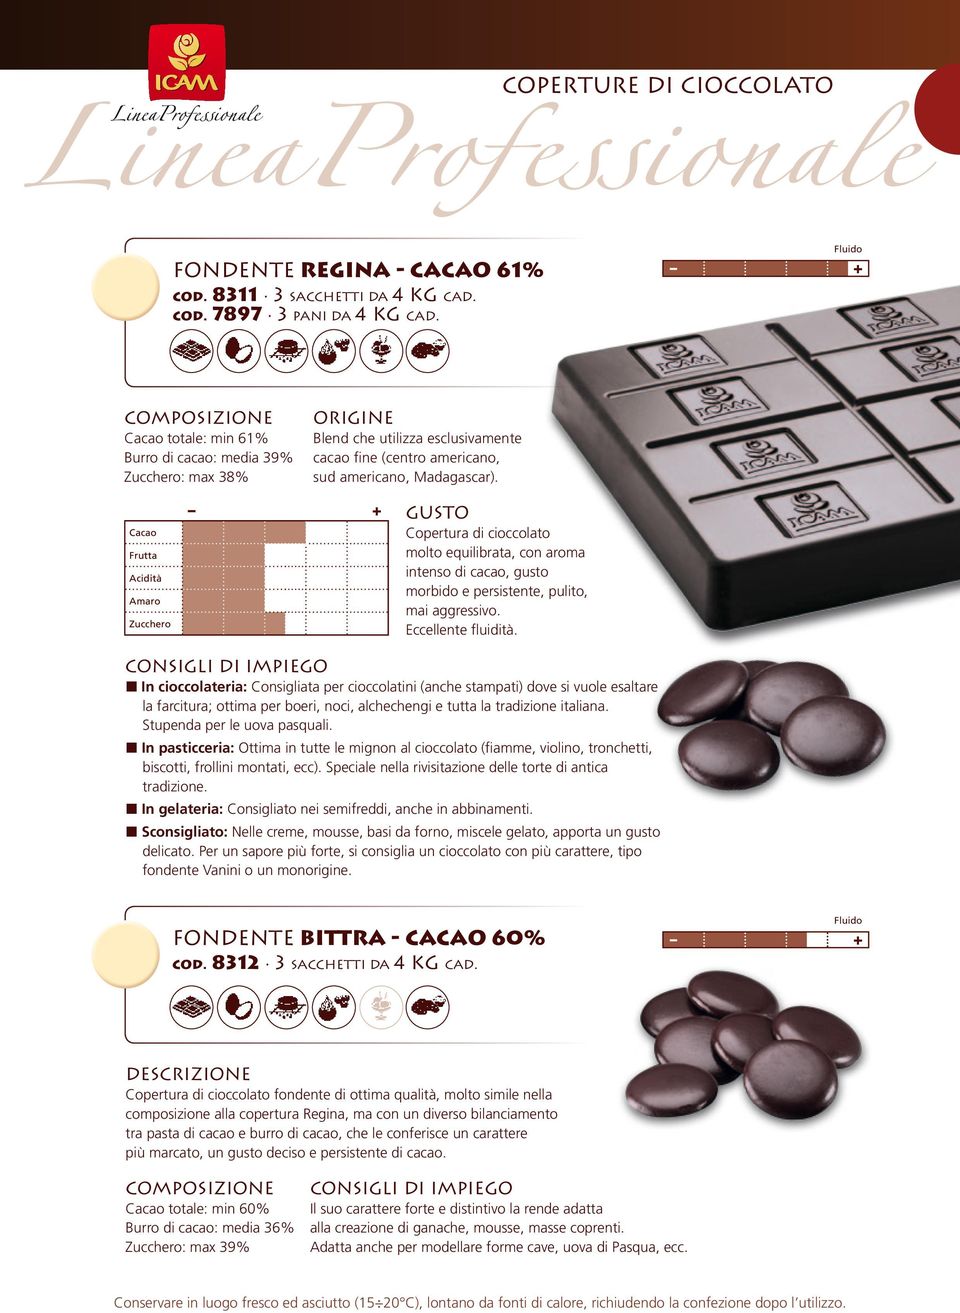 Cacao Frutta Acidità Amaro Zucchero gusto Copertura di cioccolato molto equilibrata, con aroma intenso di cacao, gusto morbido e persistente, pulito, mai aggressivo. Eccellente fluidità.